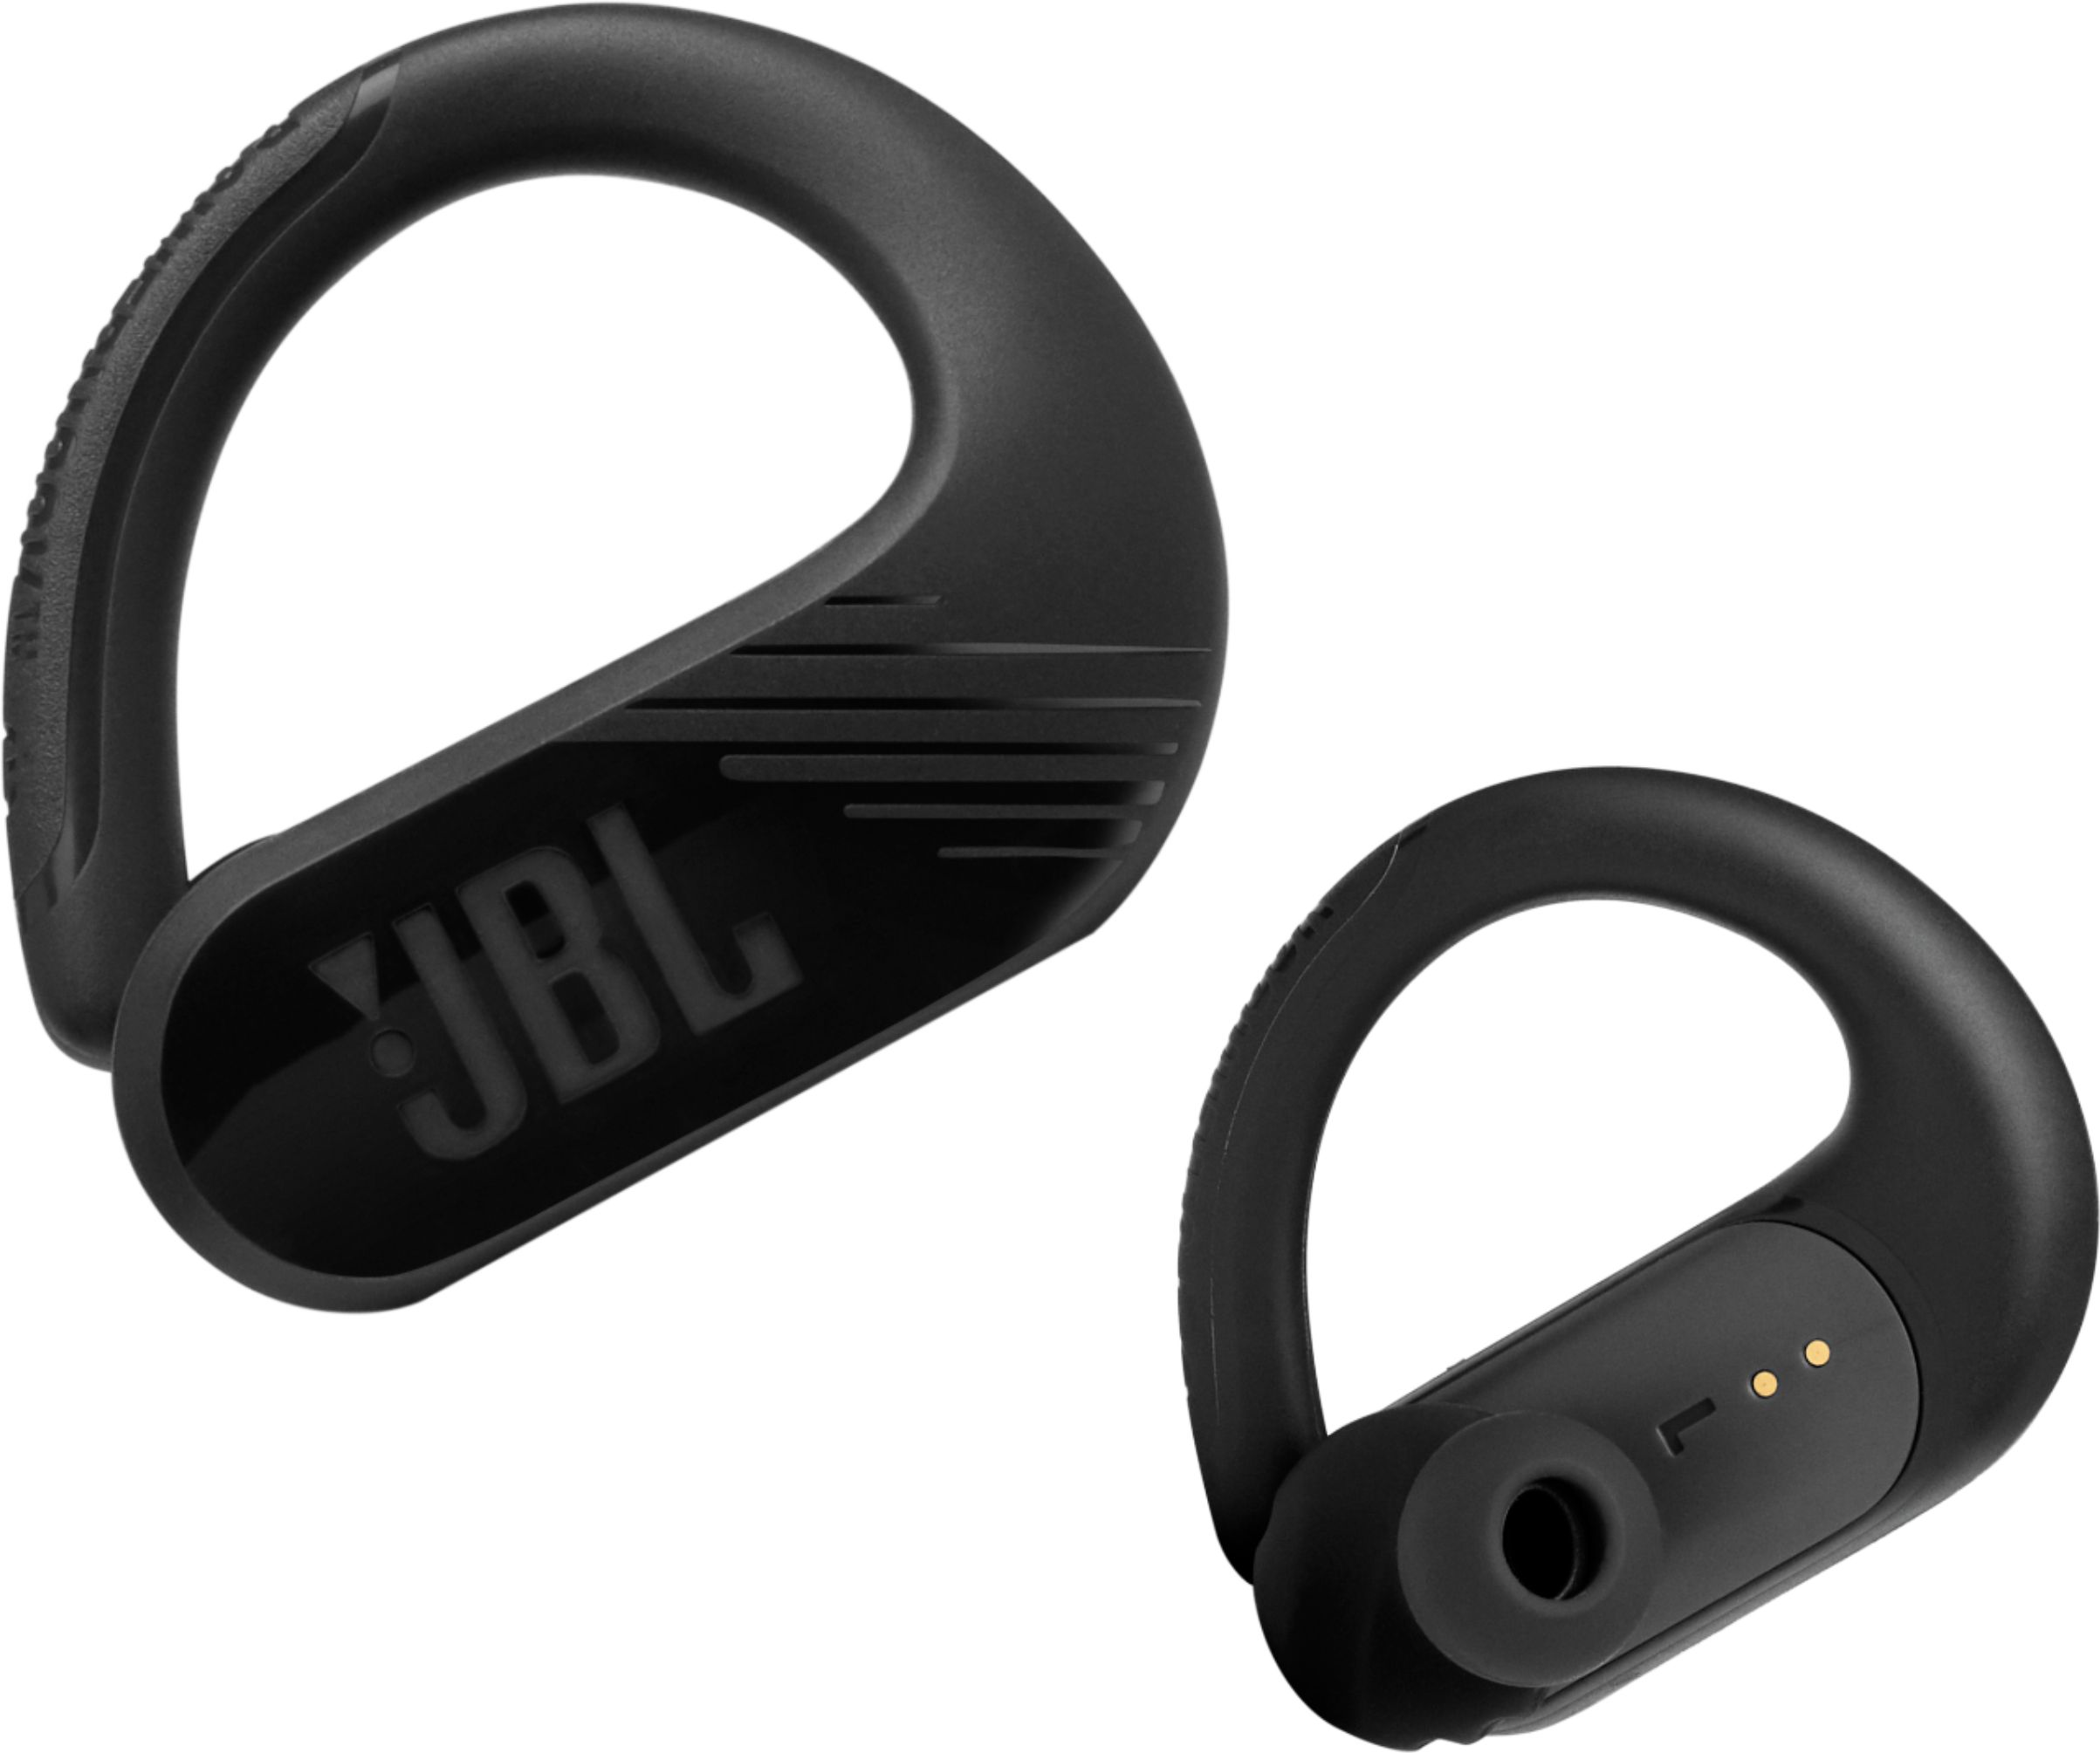 JBL Earbud Headphones - Best Buy